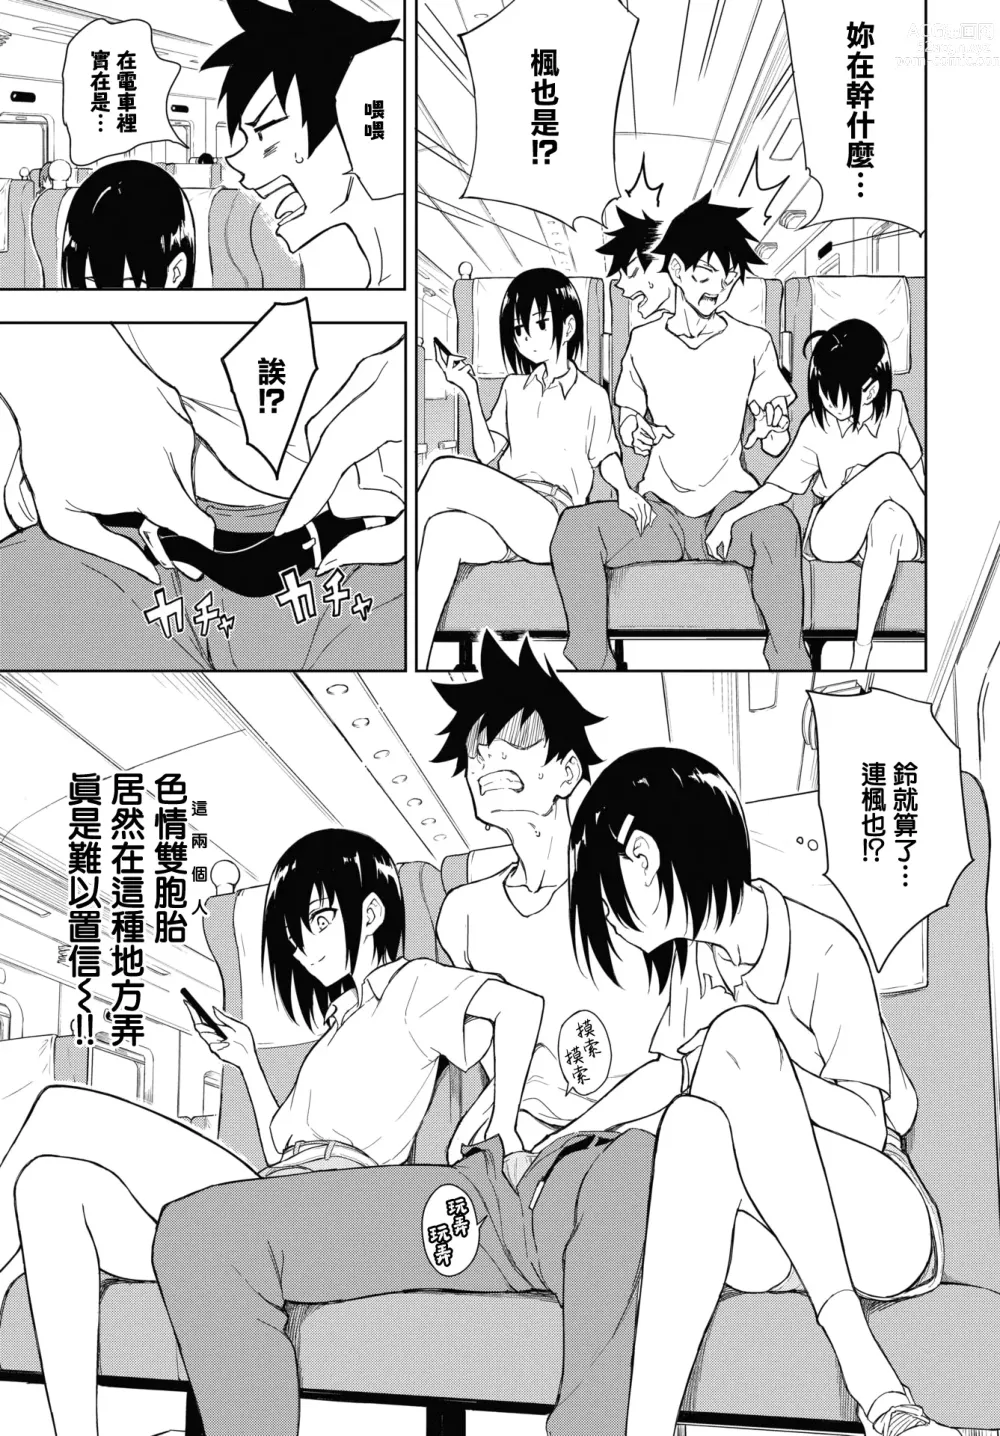 Page 7 of manga Kaede to Suzu 7